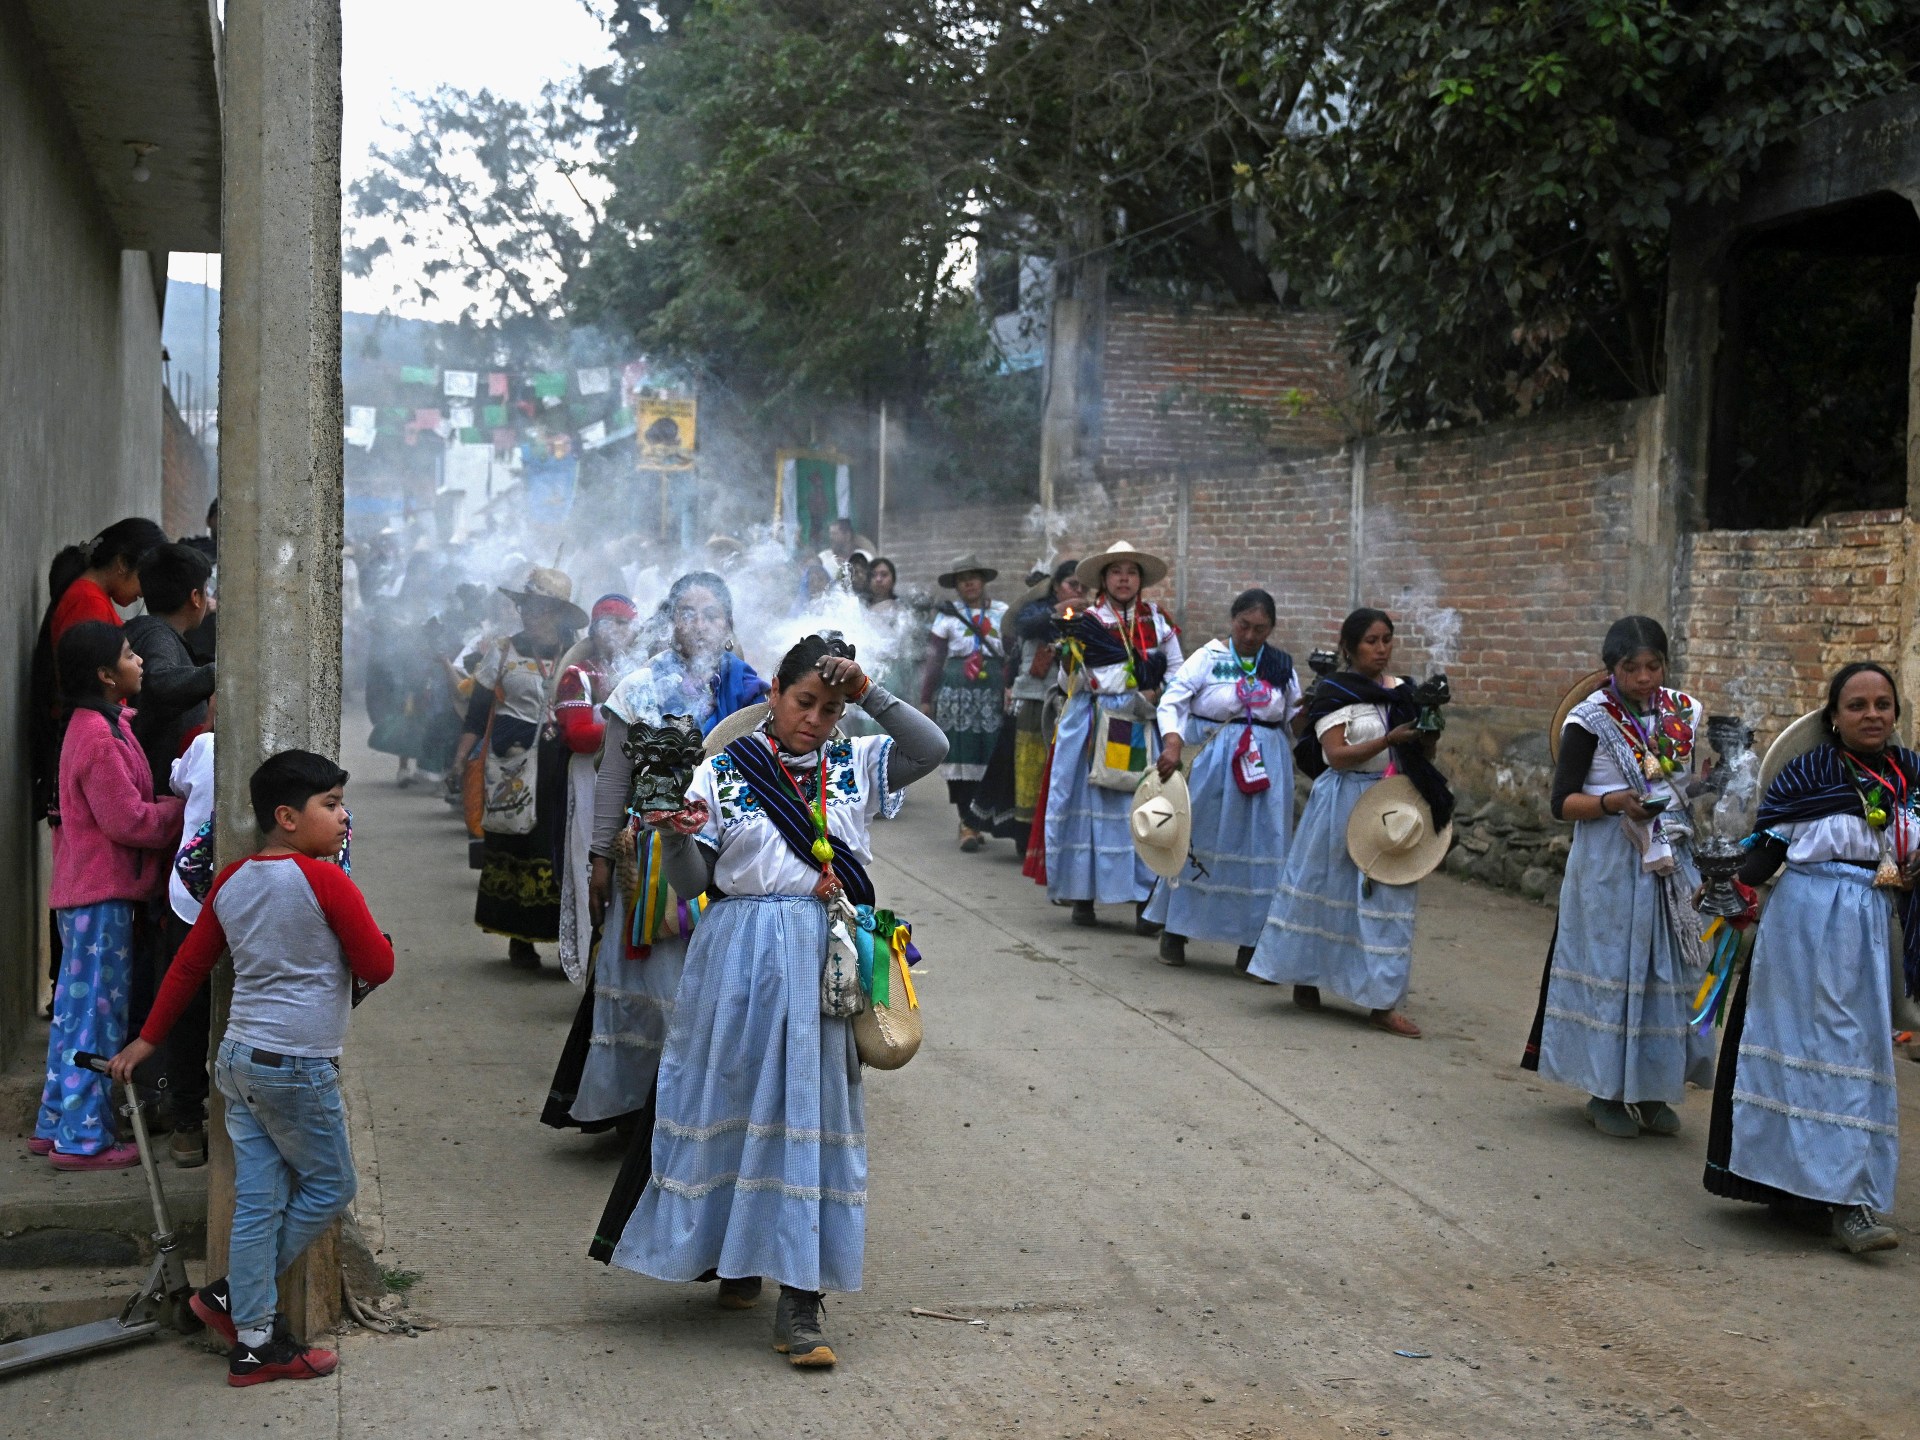 بـ”النار الجديدة”.. السكان الأصليون في المكسيك يحيون رأس السنة المحلية | أسلوب حياة – البوكس نيوز